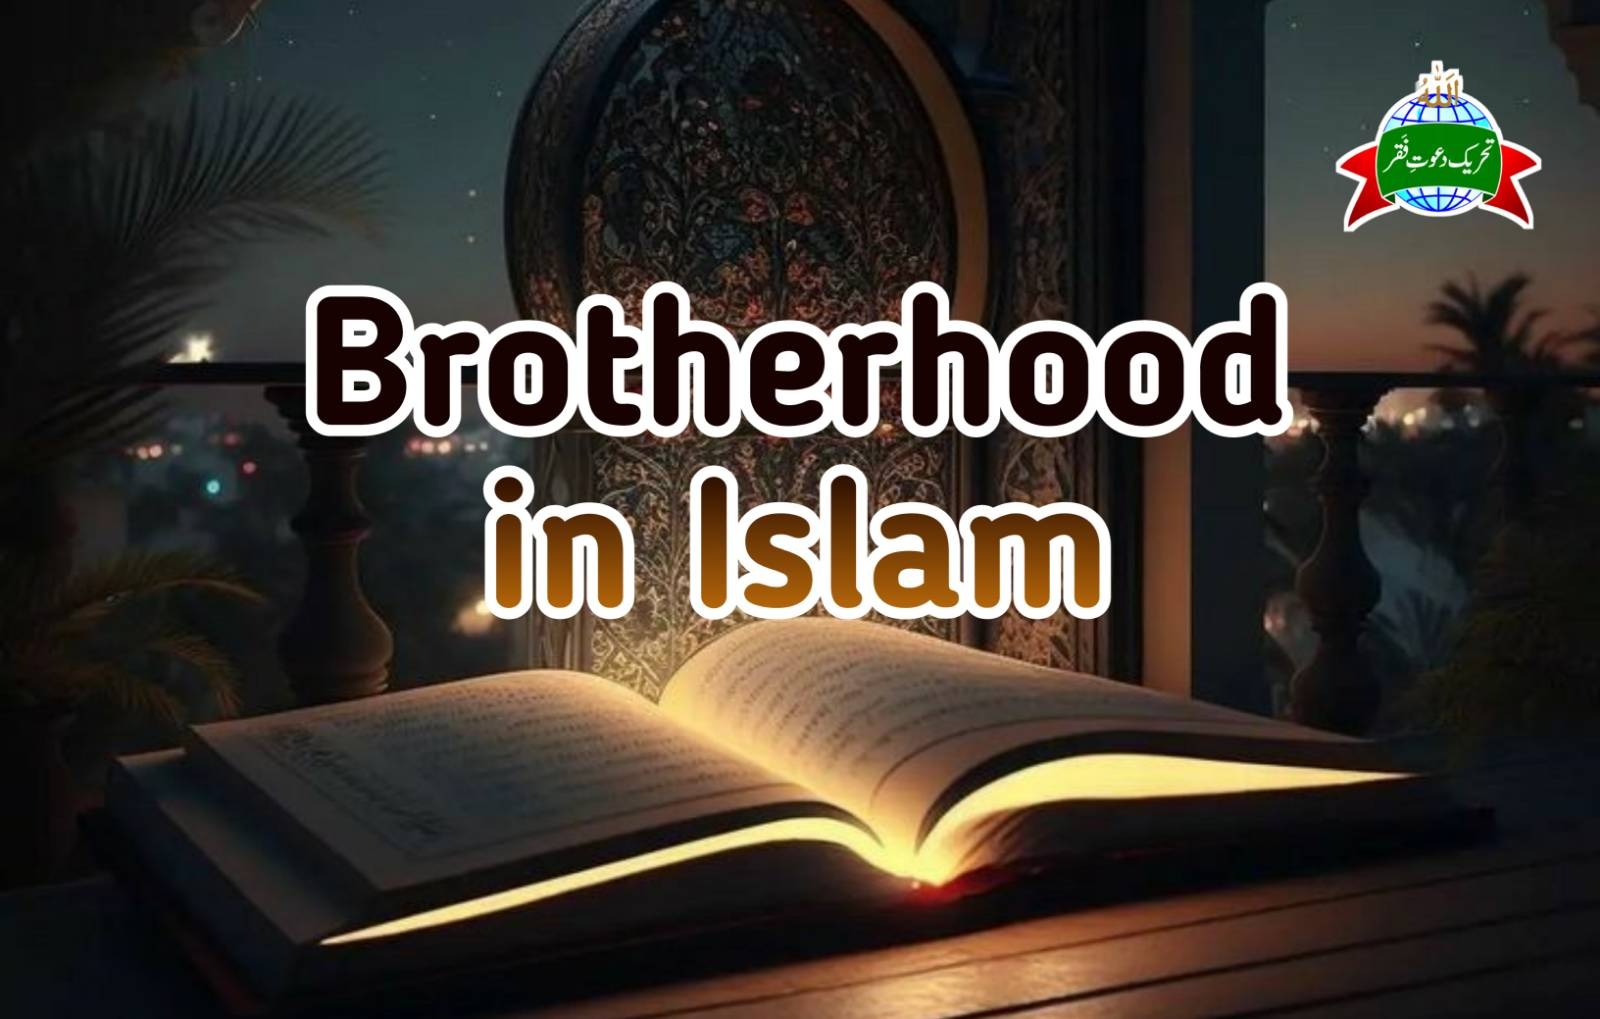 Brotherhood in Islam